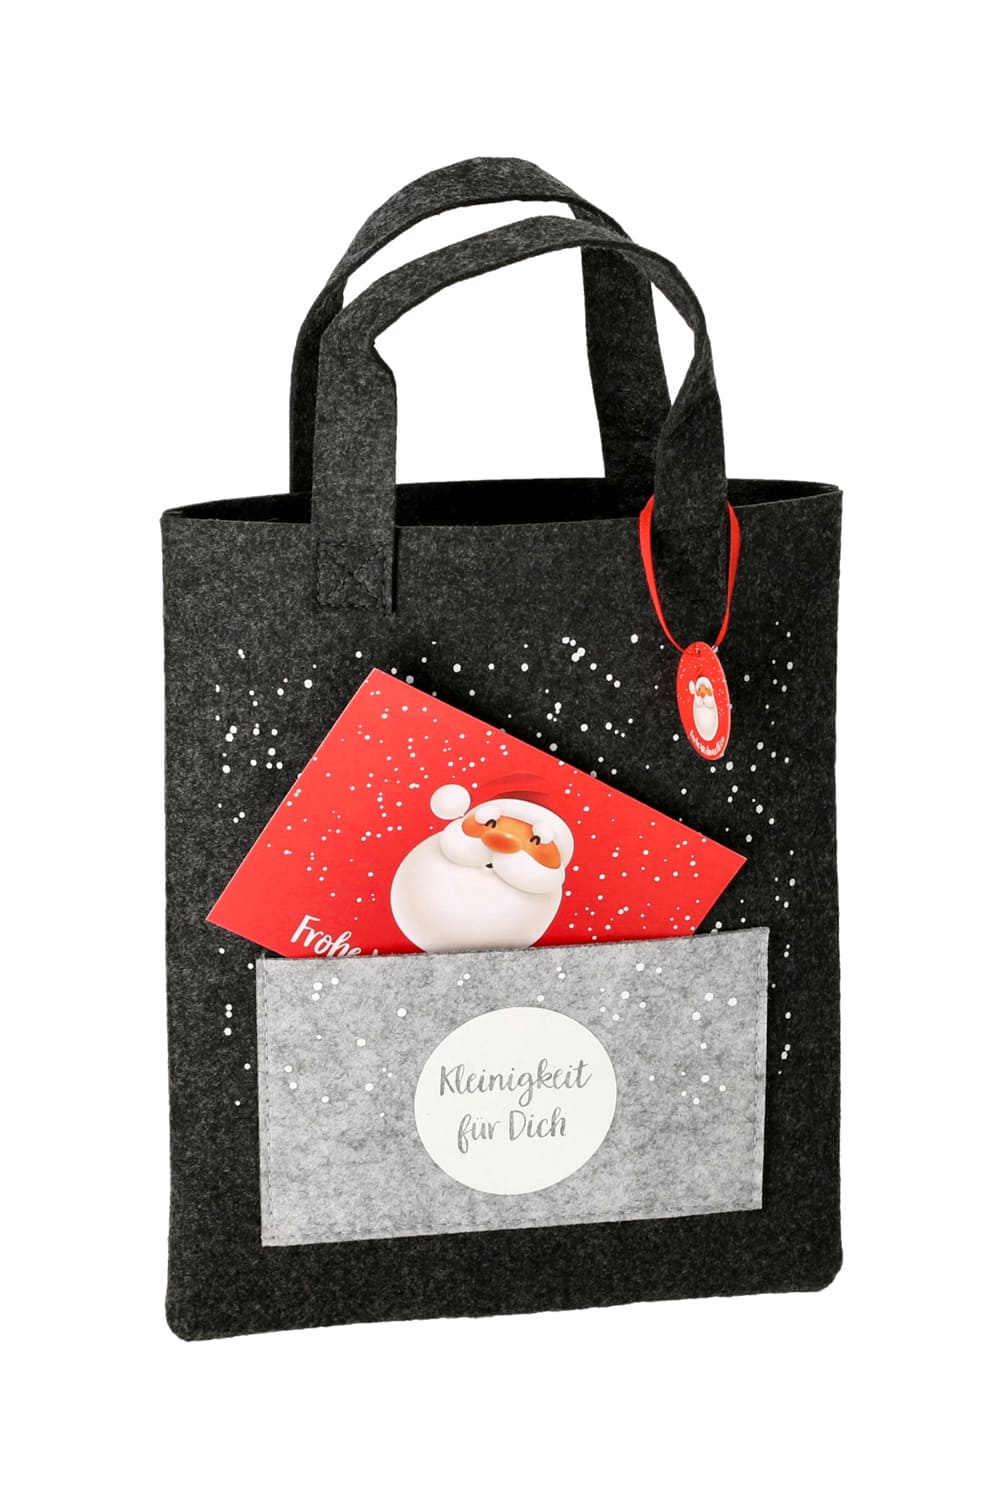 Diese Filztasche ist inklusive einer Postkarte für Weihnachtsgruesse. Mit der Aufschrift: Kleinigkeit fuer Dich. Eine originelle und kreative Geschenkverpackung zu Weihnachten. Eine perfekte Tasche fuer ein Geldgeschenk oder ein Gutscheingeschenk. Passend fuer die ganze Weihnachtszeit! 